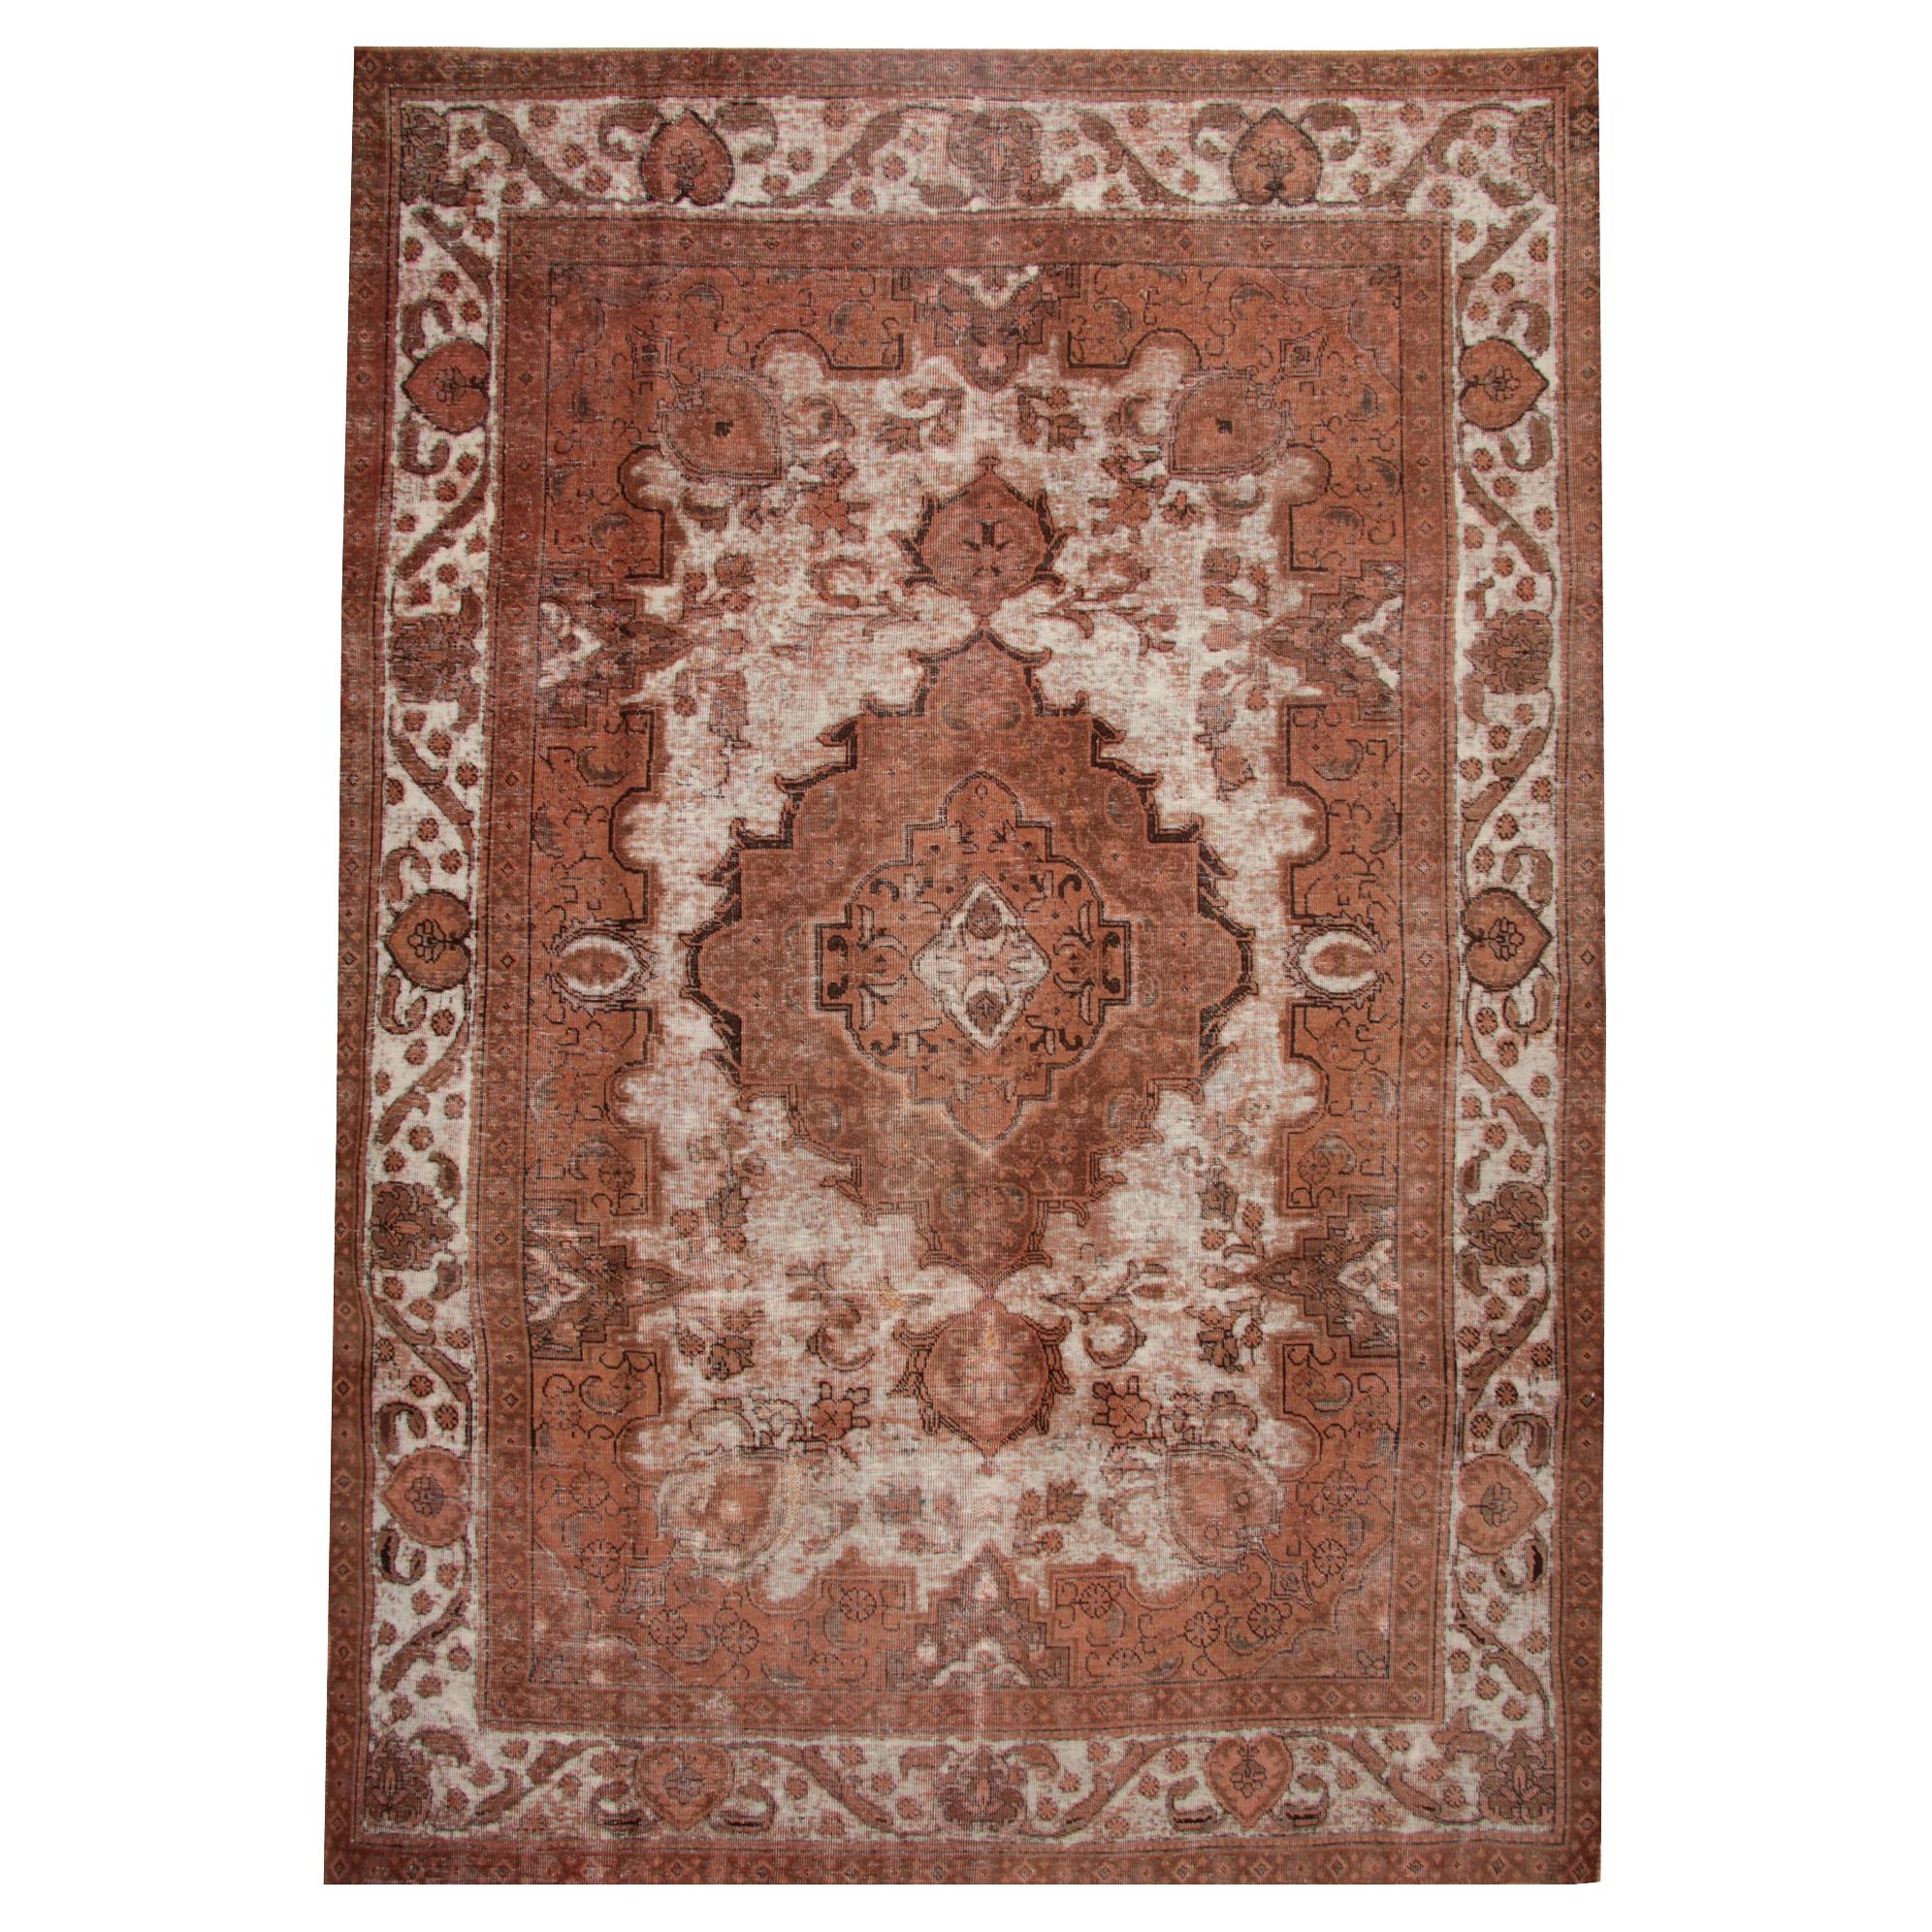 Großer traditioneller handgefertigter Vintage-Teppich aus Wolle mit Medaillonmuster